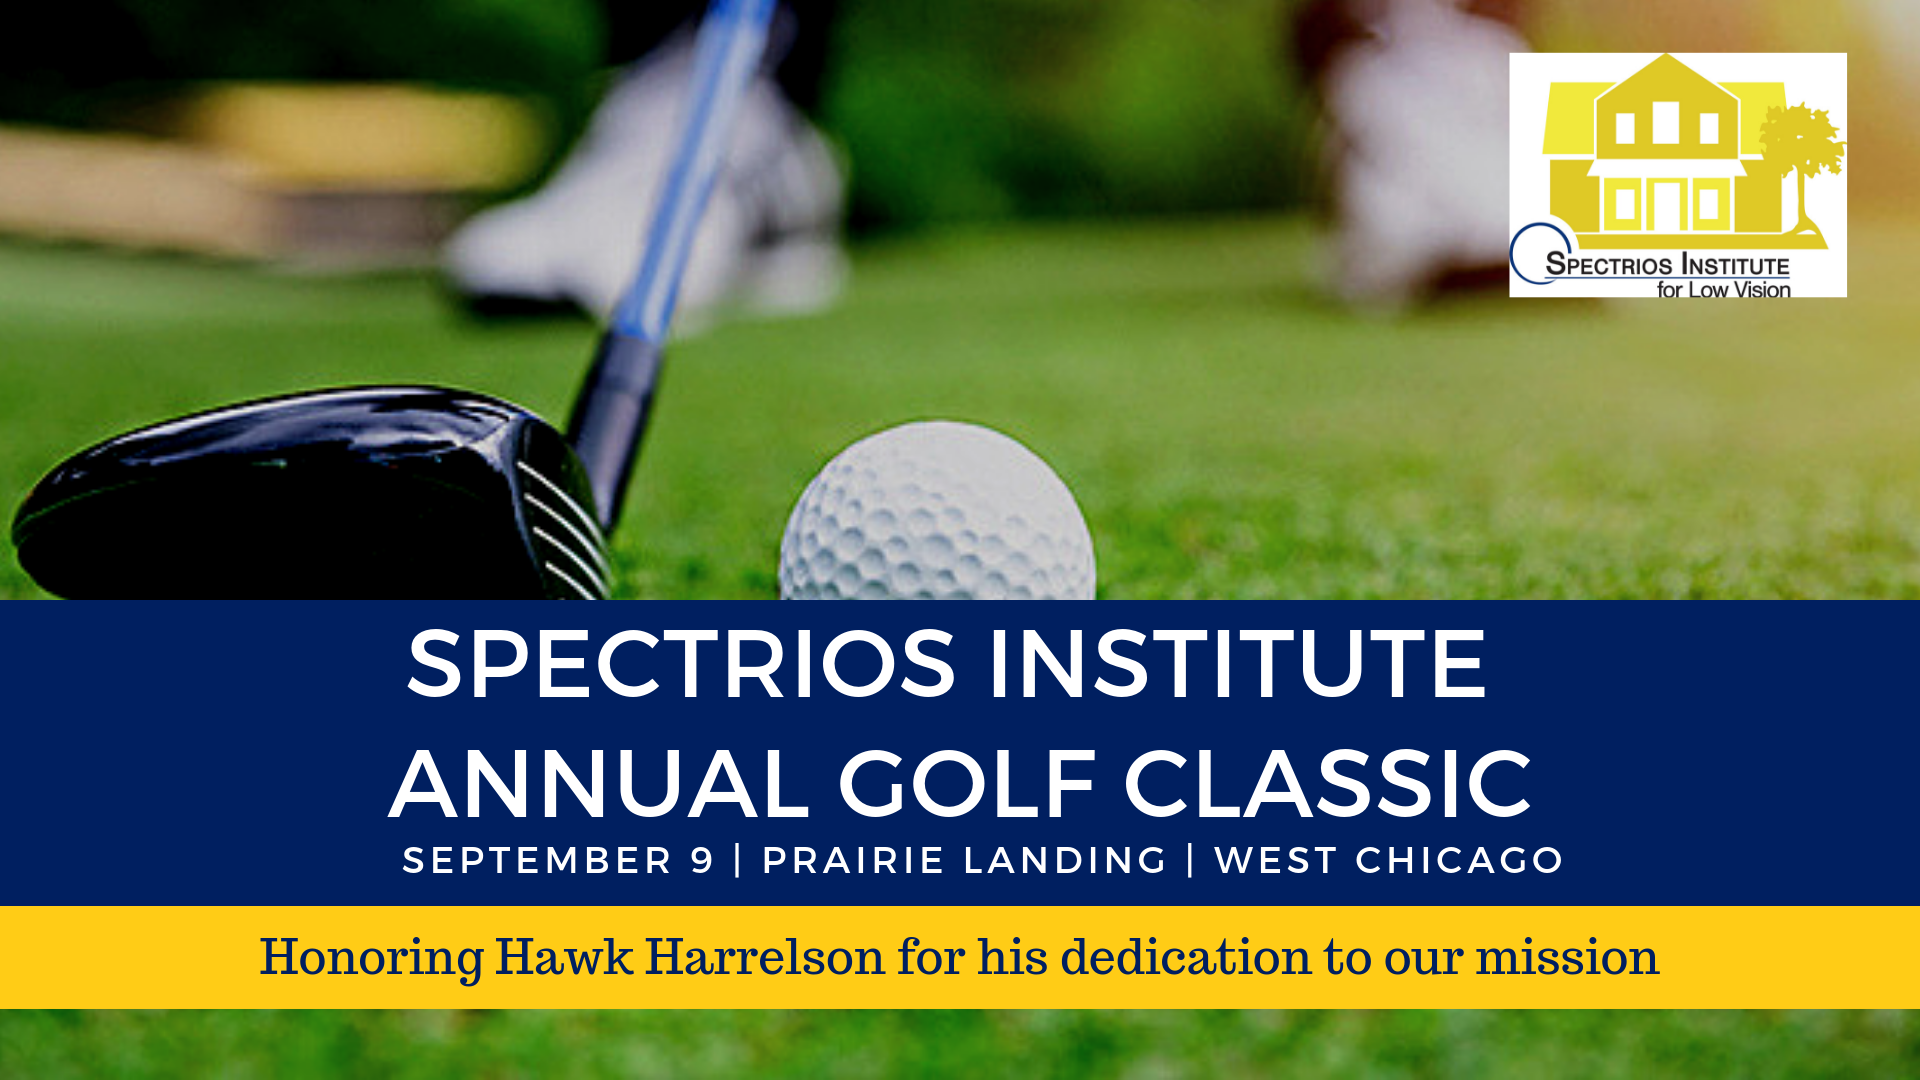 Spectrios Institute - Annual Golf Classic